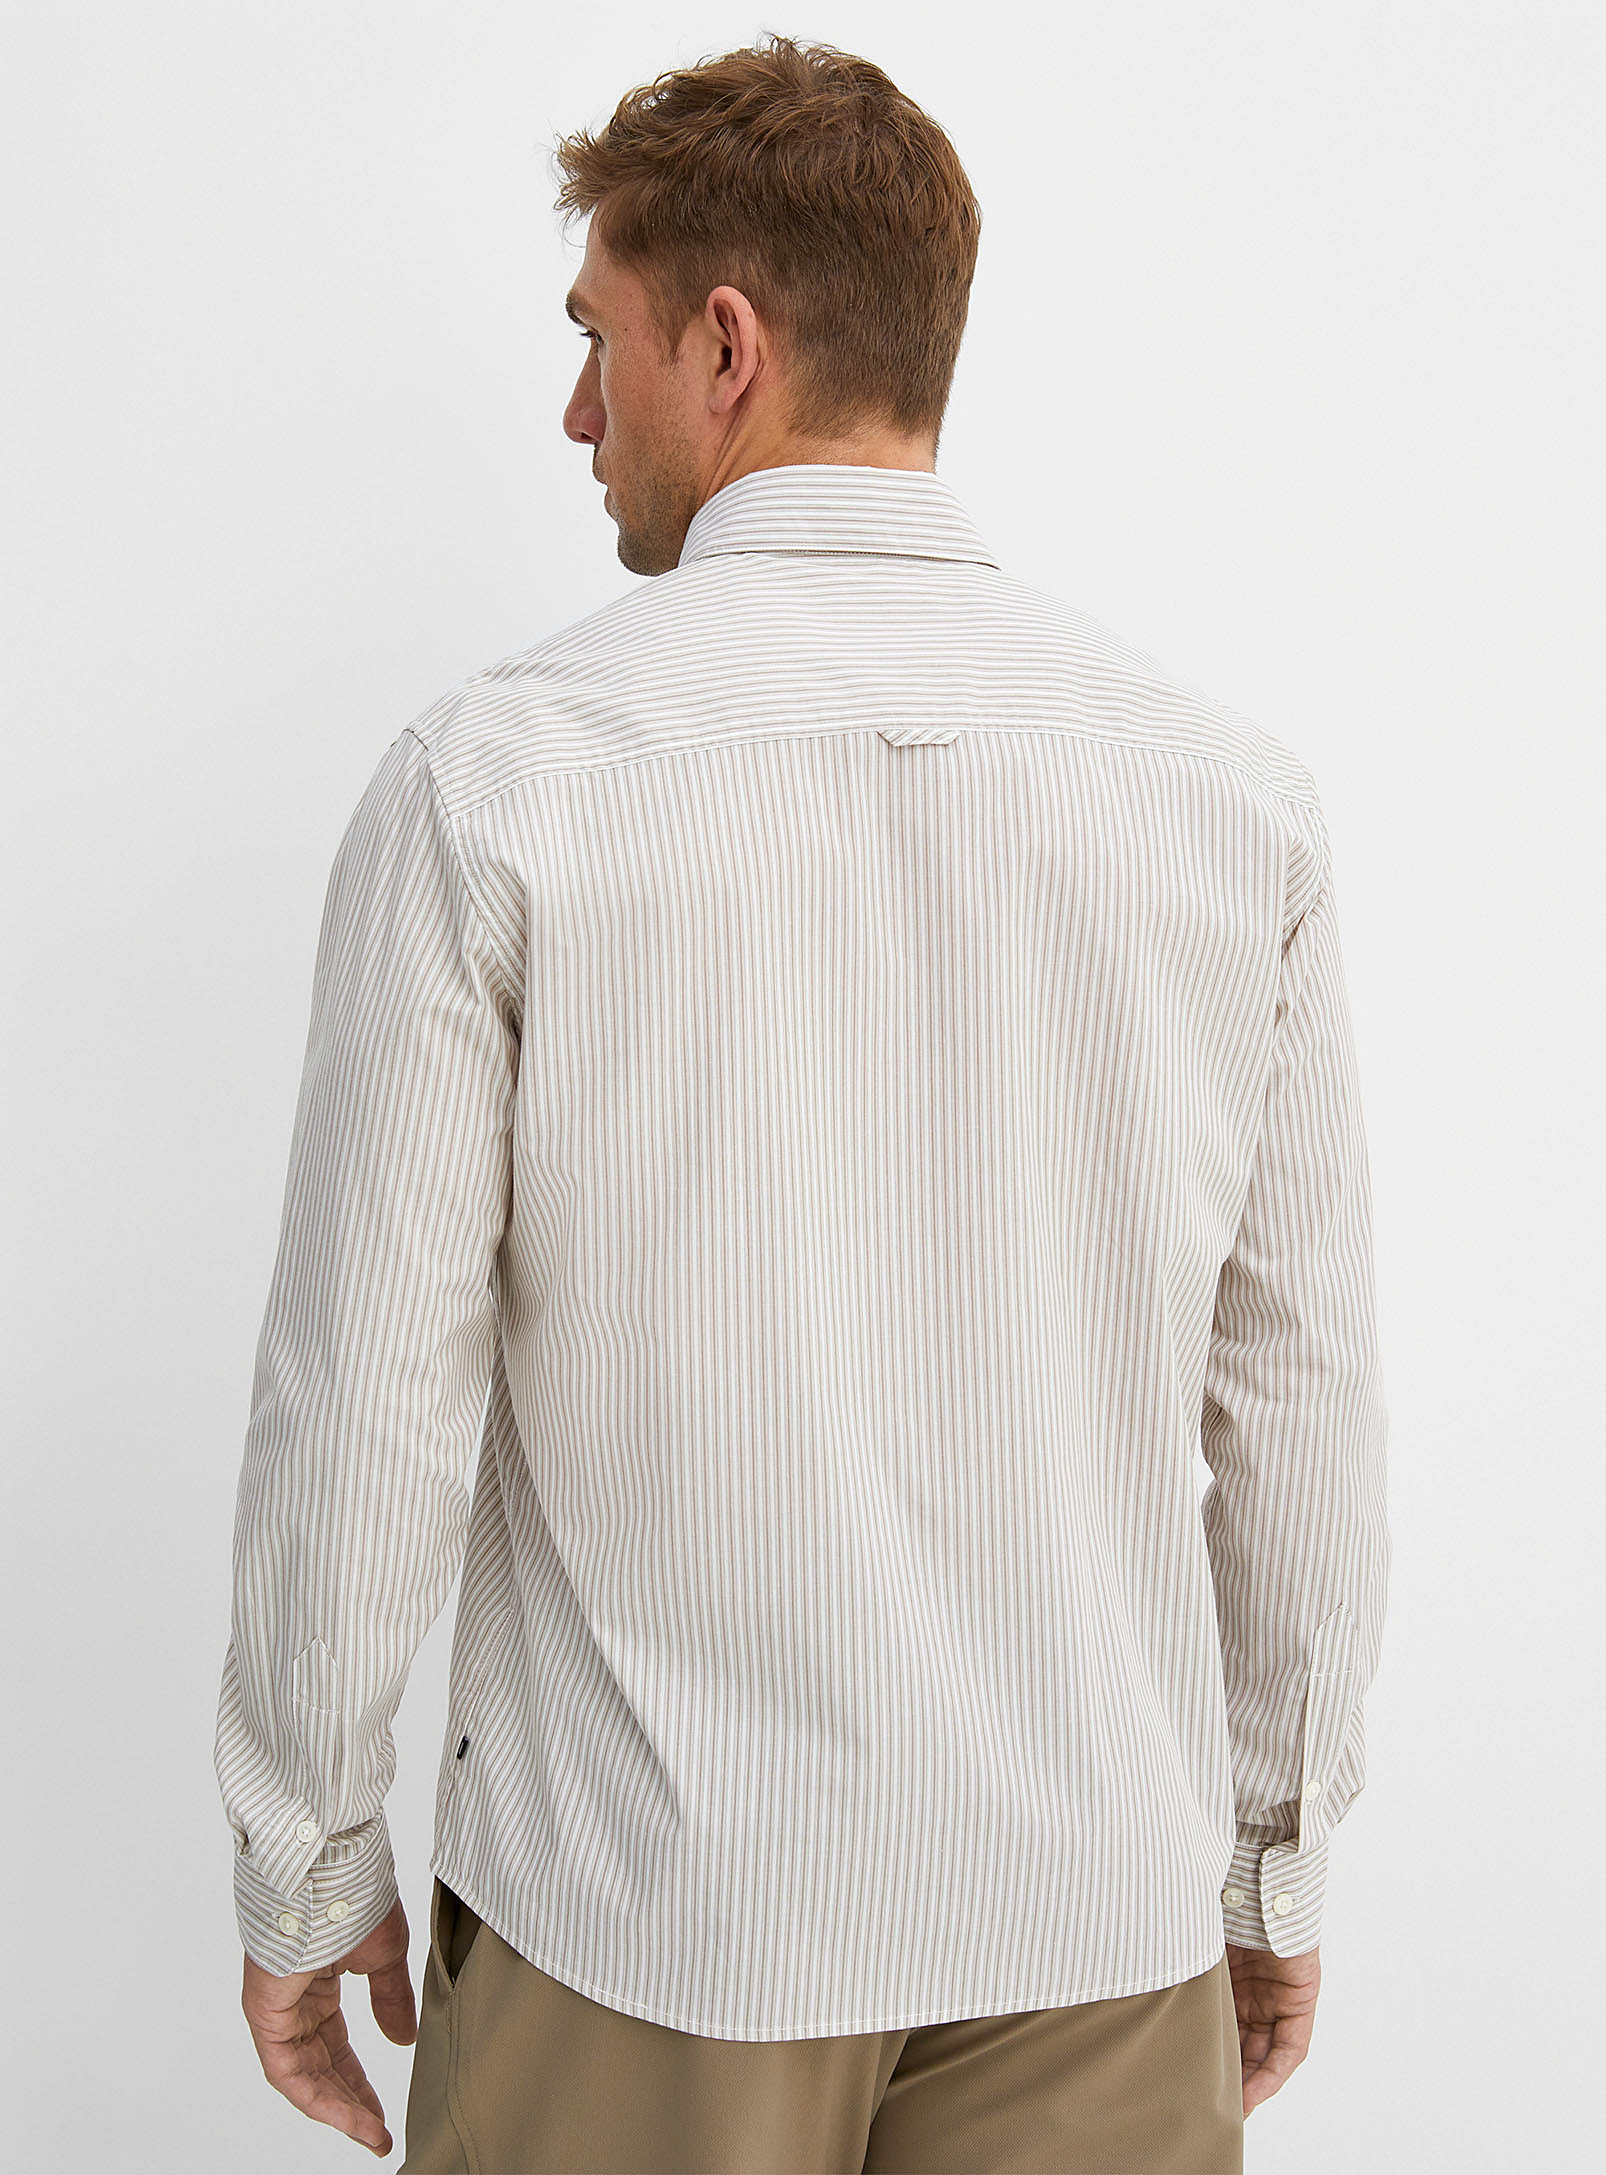 Matinique - La chemise rayures naturelles